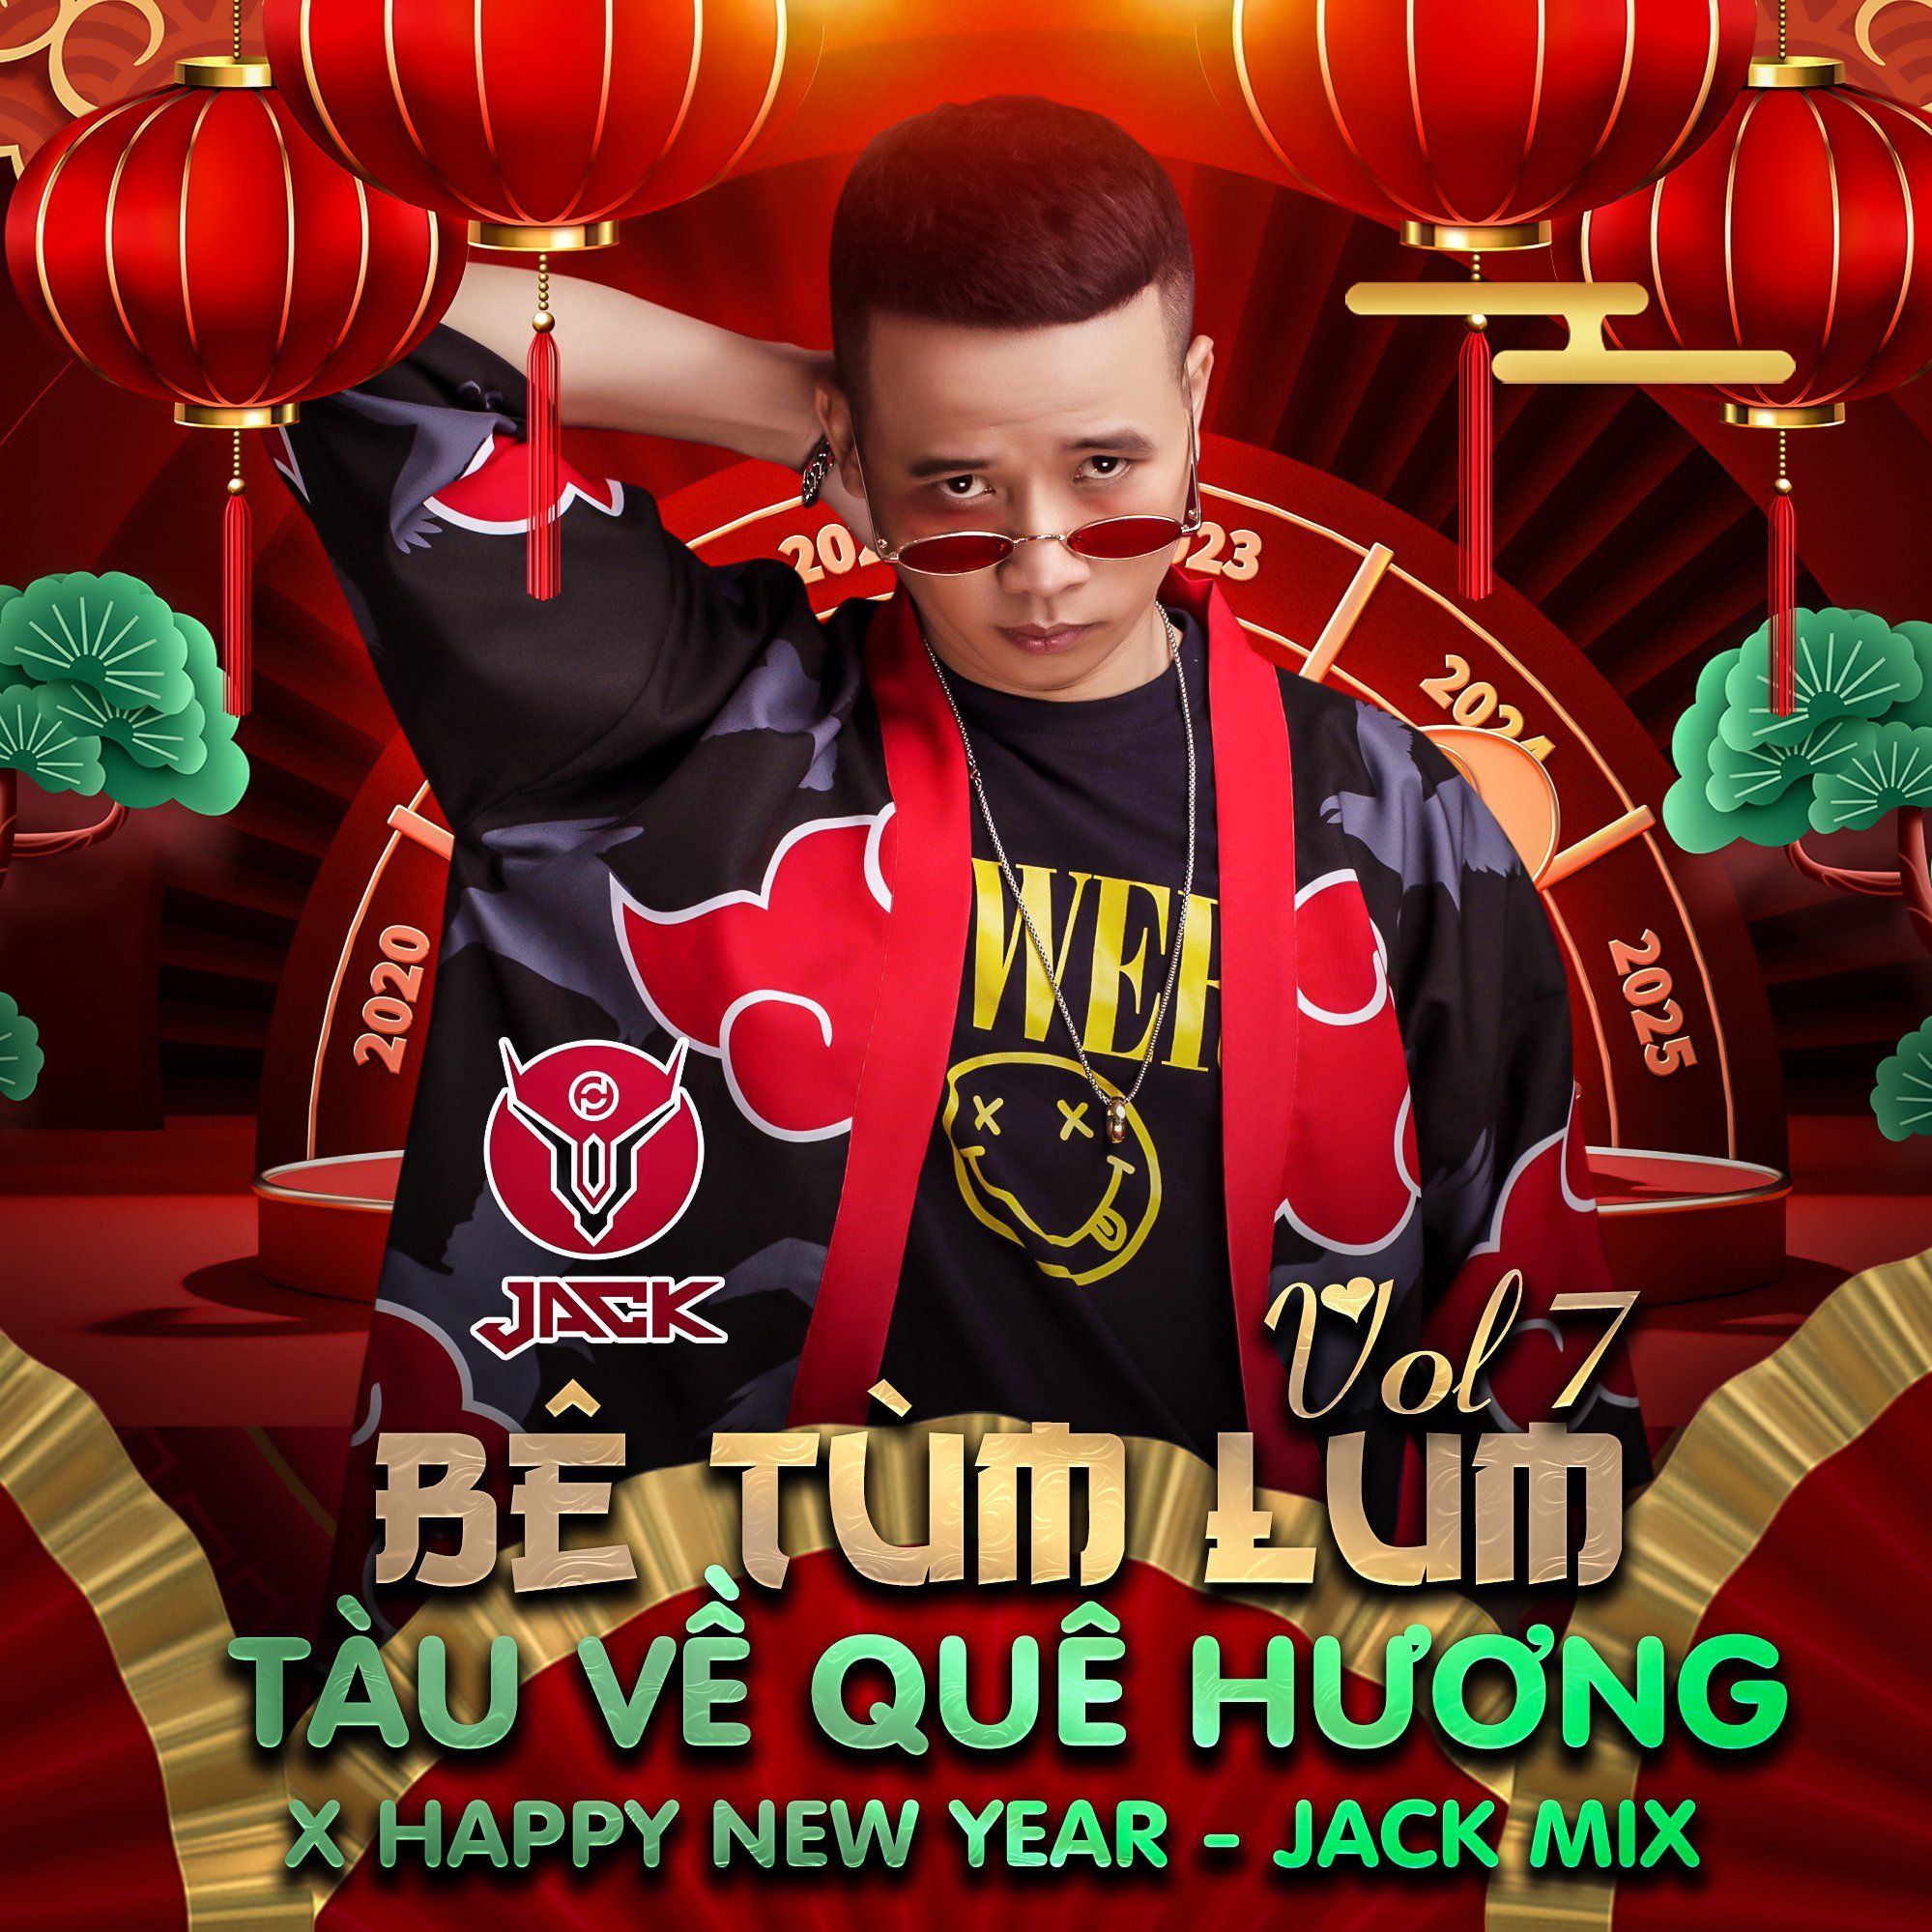 Download Bê Tùm Lum Vol 07 - Tàu Về Quê Hương X Happy New Year - Jack Mix